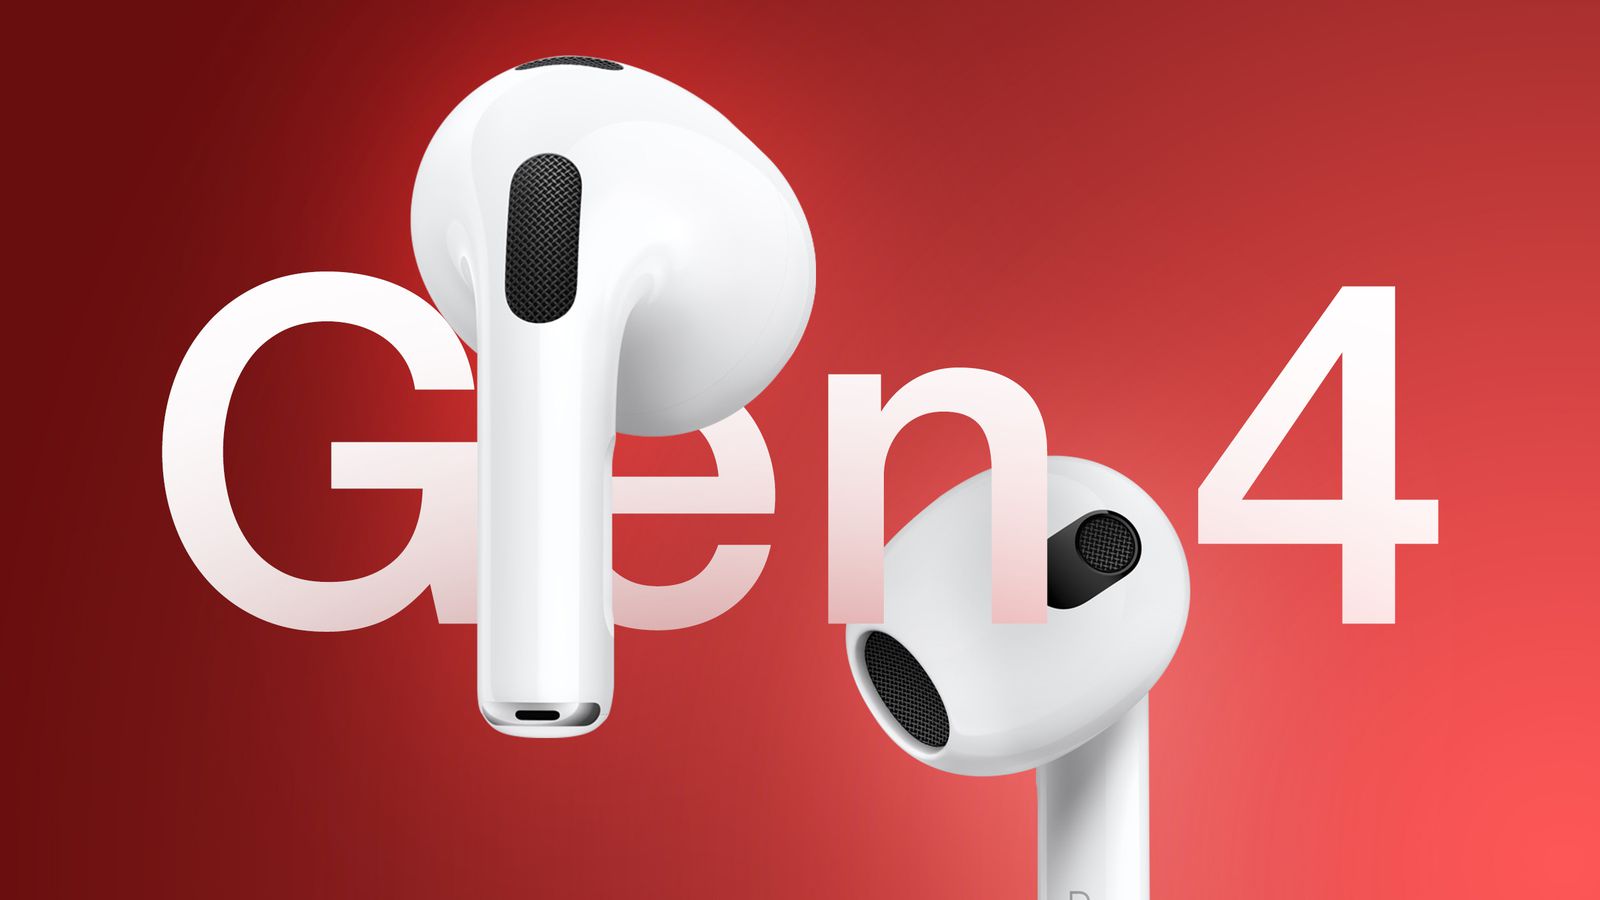 Z witryny iPhoneIslam.com dwie bezprzewodowe słuchawki douszne oznaczone „AirPods 4” unoszą się na czerwonym tle, prezentując ich konstrukcję oraz rozmieszczenie elementów mikrofonu i głośnika.